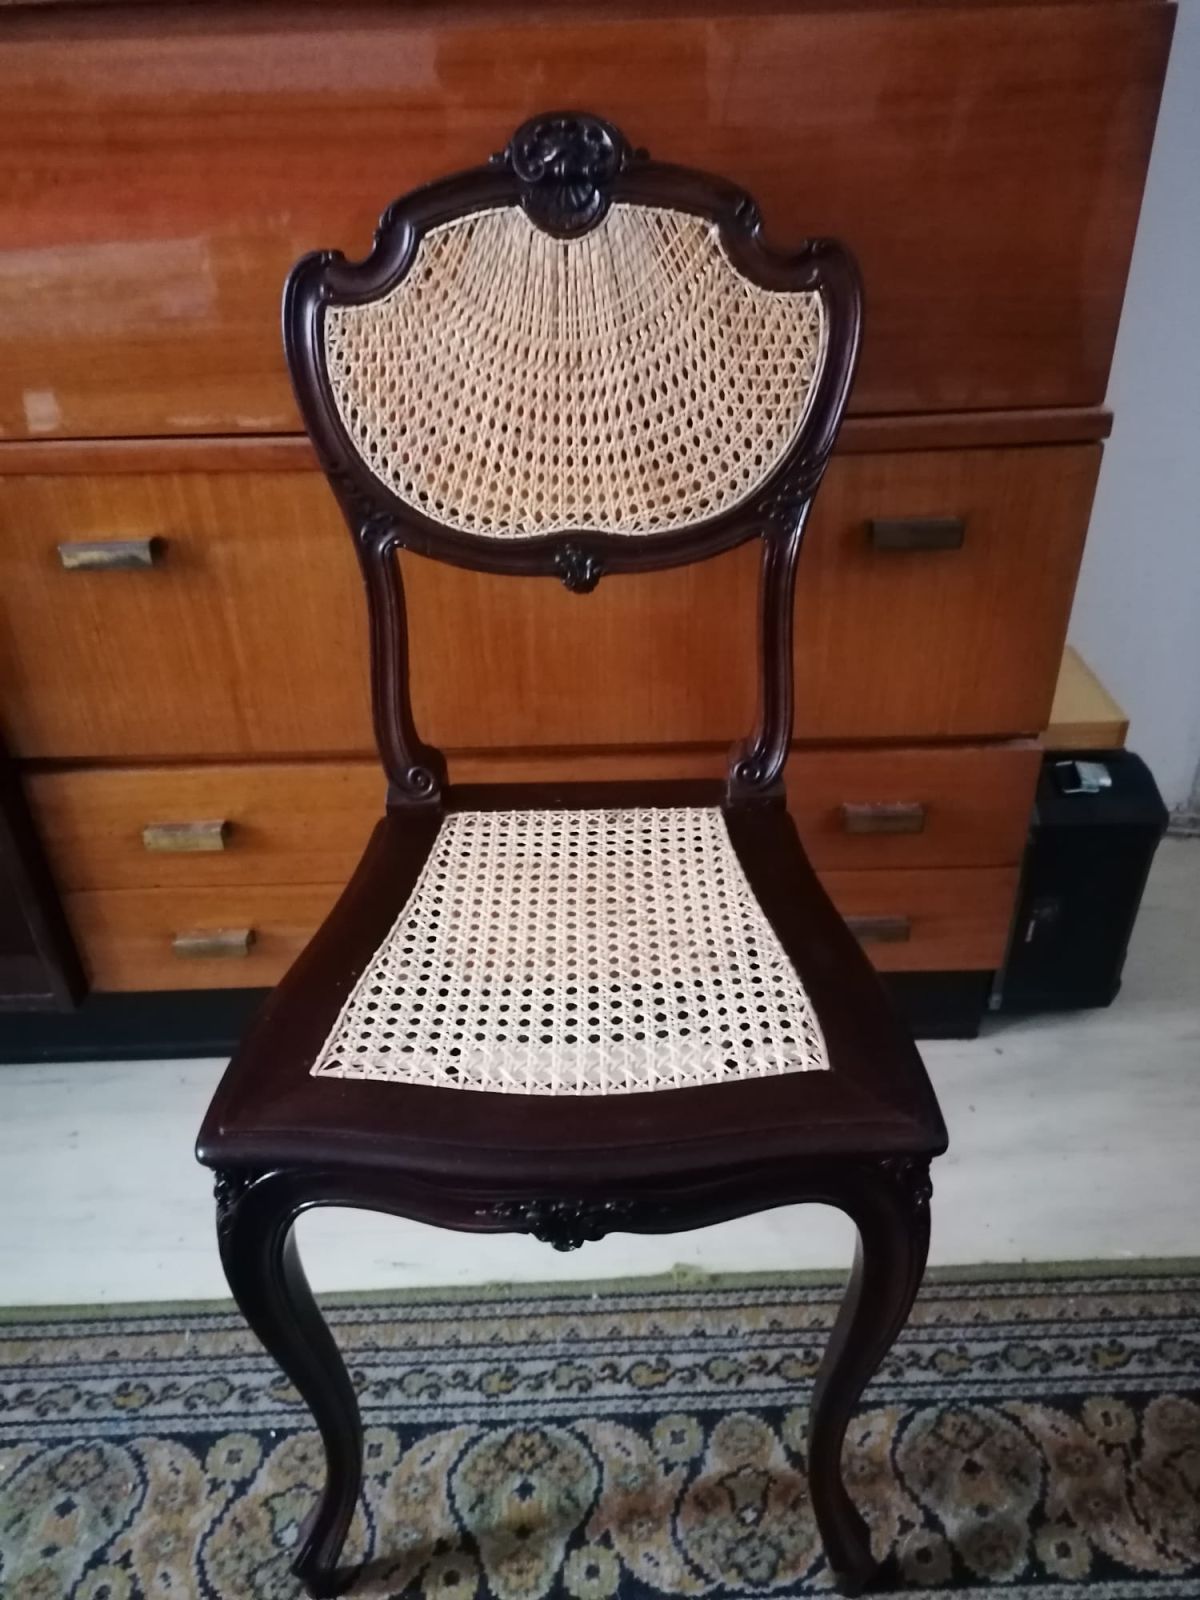 Vana mööbel saab uue elu. Restaureerimiseks ja uuendamiseks ostke meie veebipoest kvaliteetsed toolivõrgud toolide remondiks.